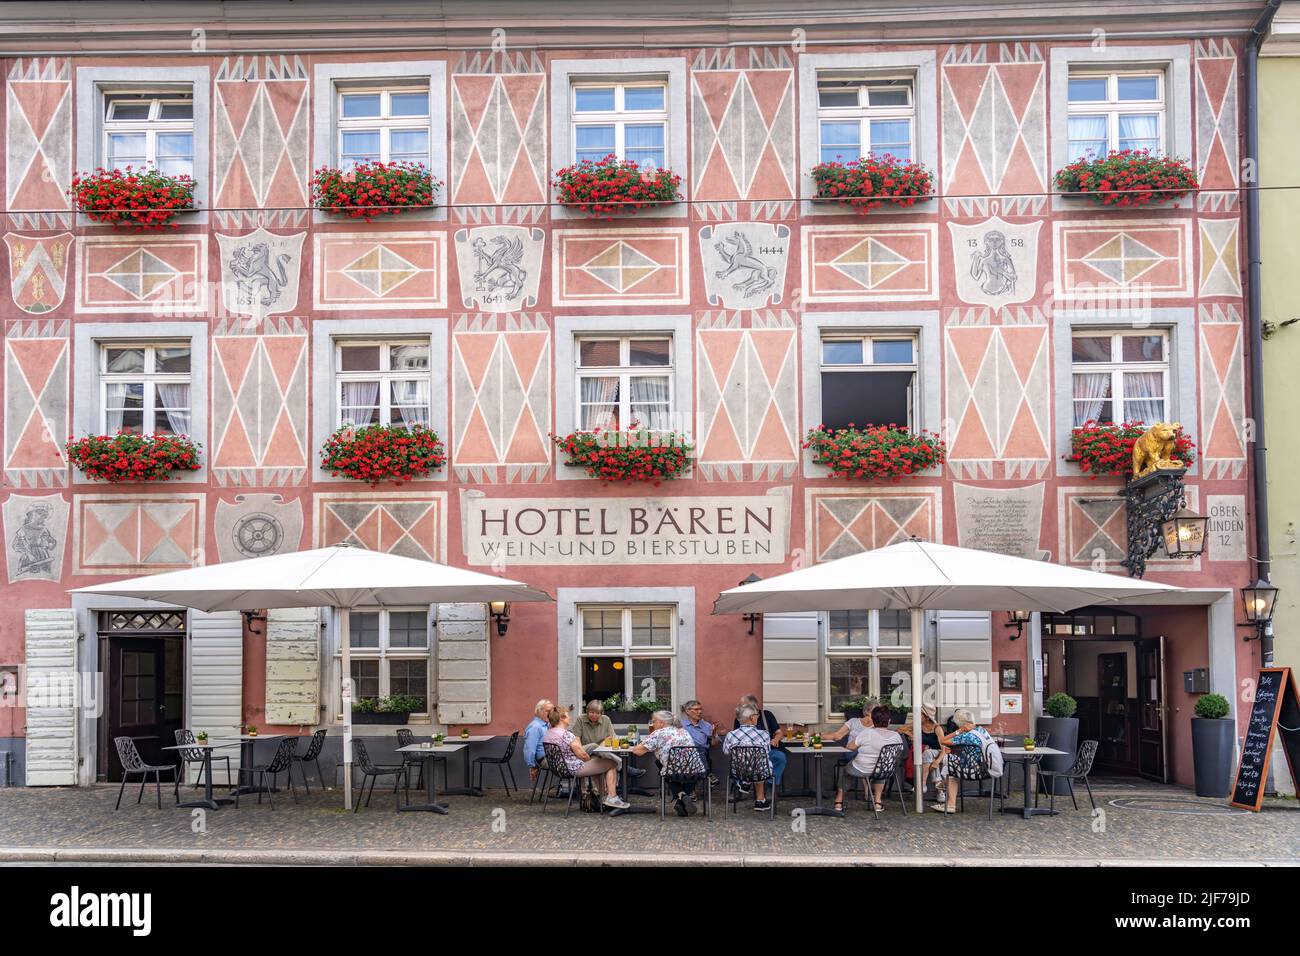 Hotel und Gasthaus Zum Roten Bären, Freiburg im Breisgau, Schwarzwald, Baden-Württemberg, Deutschland |  Hotel and restaurant Zum Roten Bären in  Frei Stock Photo